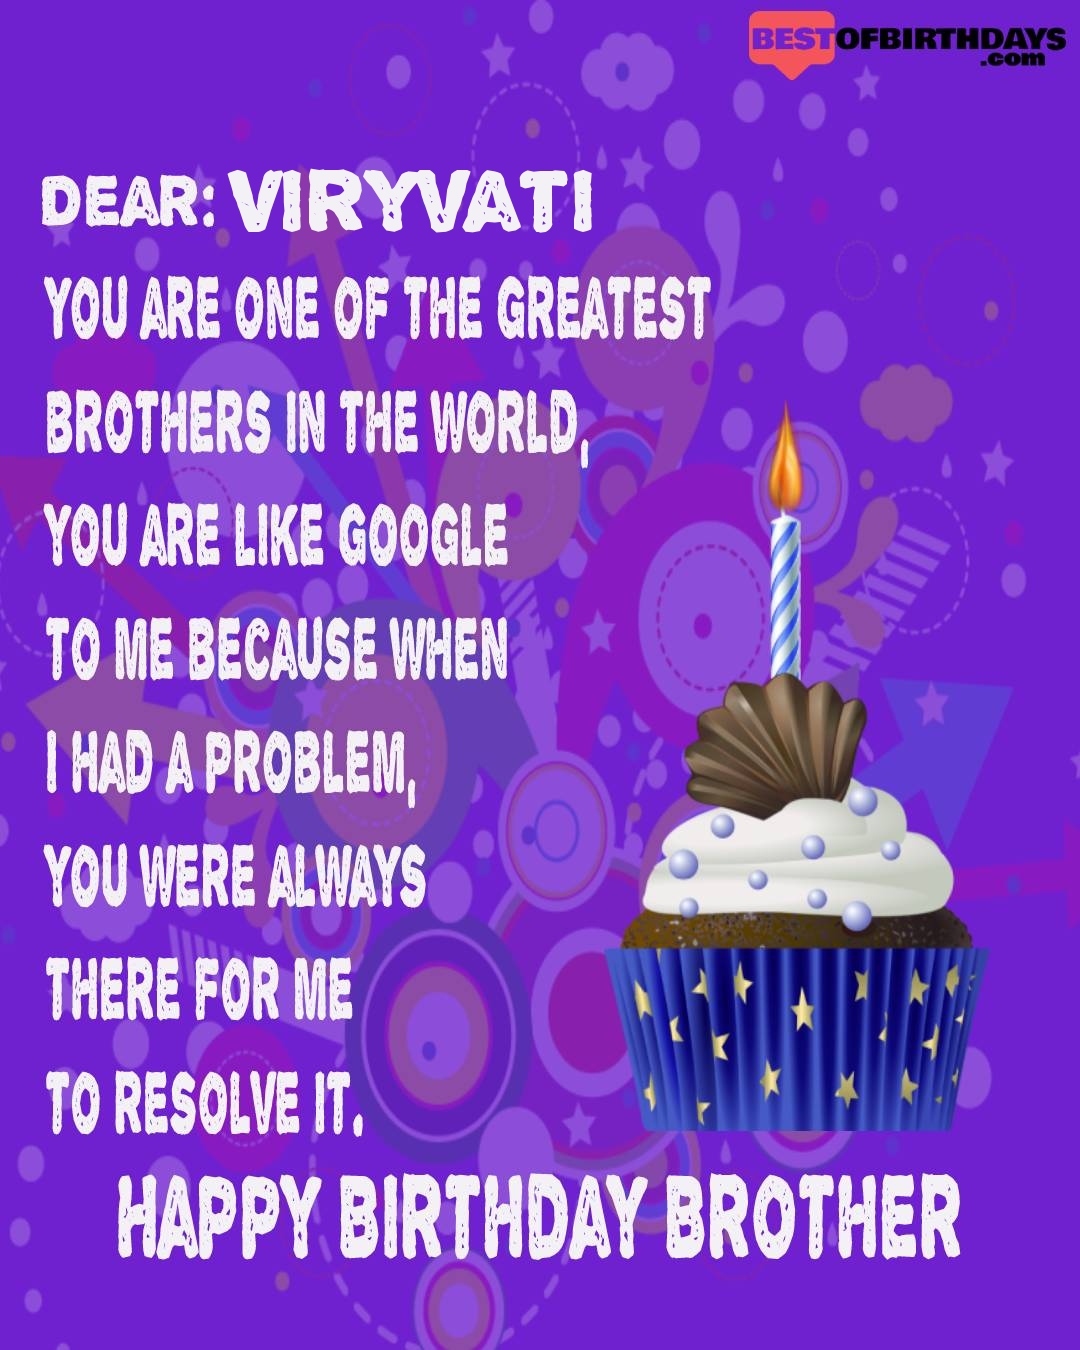 Happy birthday viryvati bhai brother bro